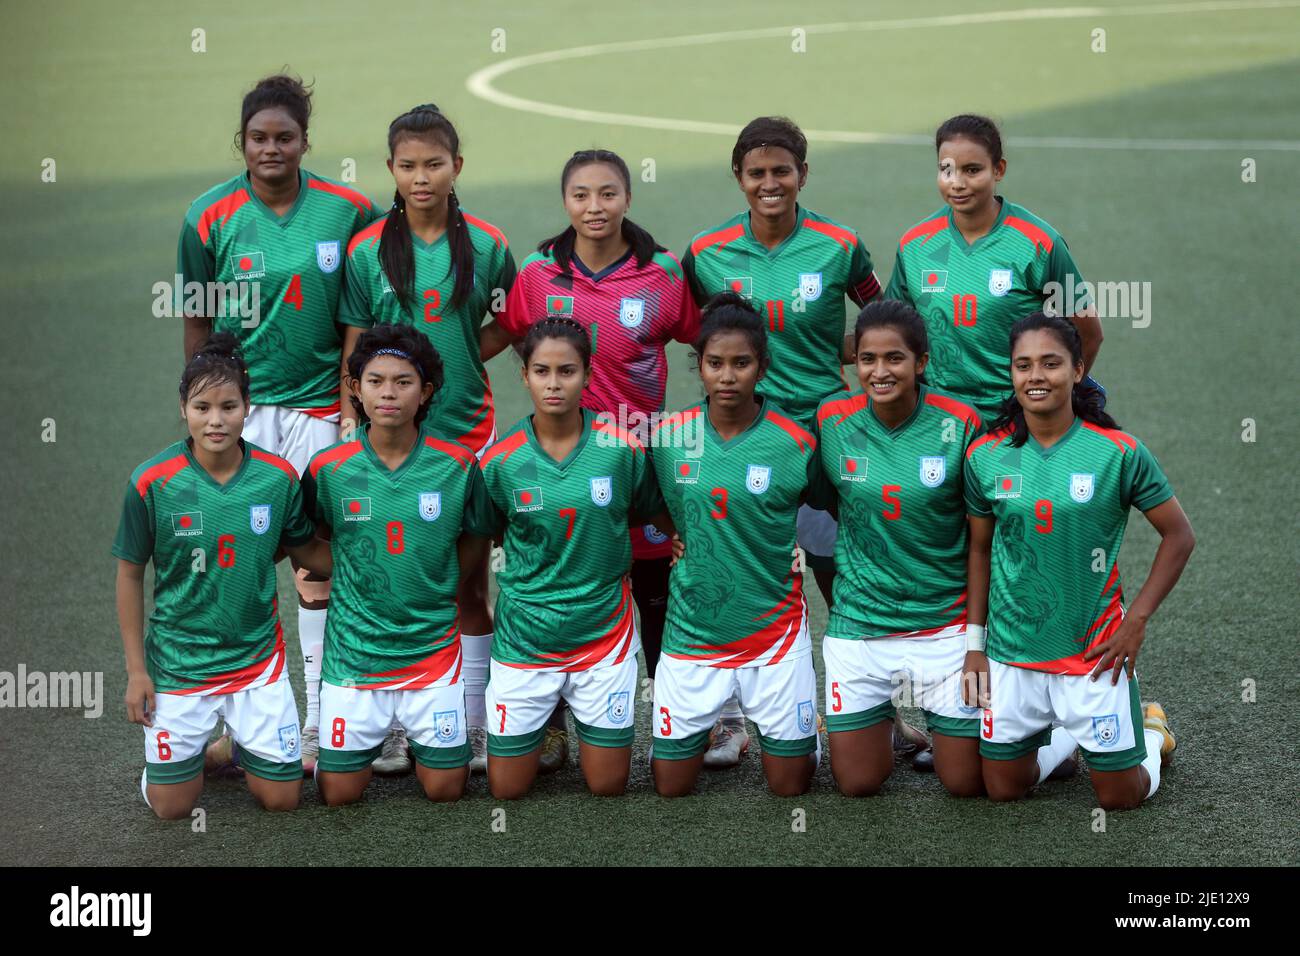 Selección de fútbol de bangladés